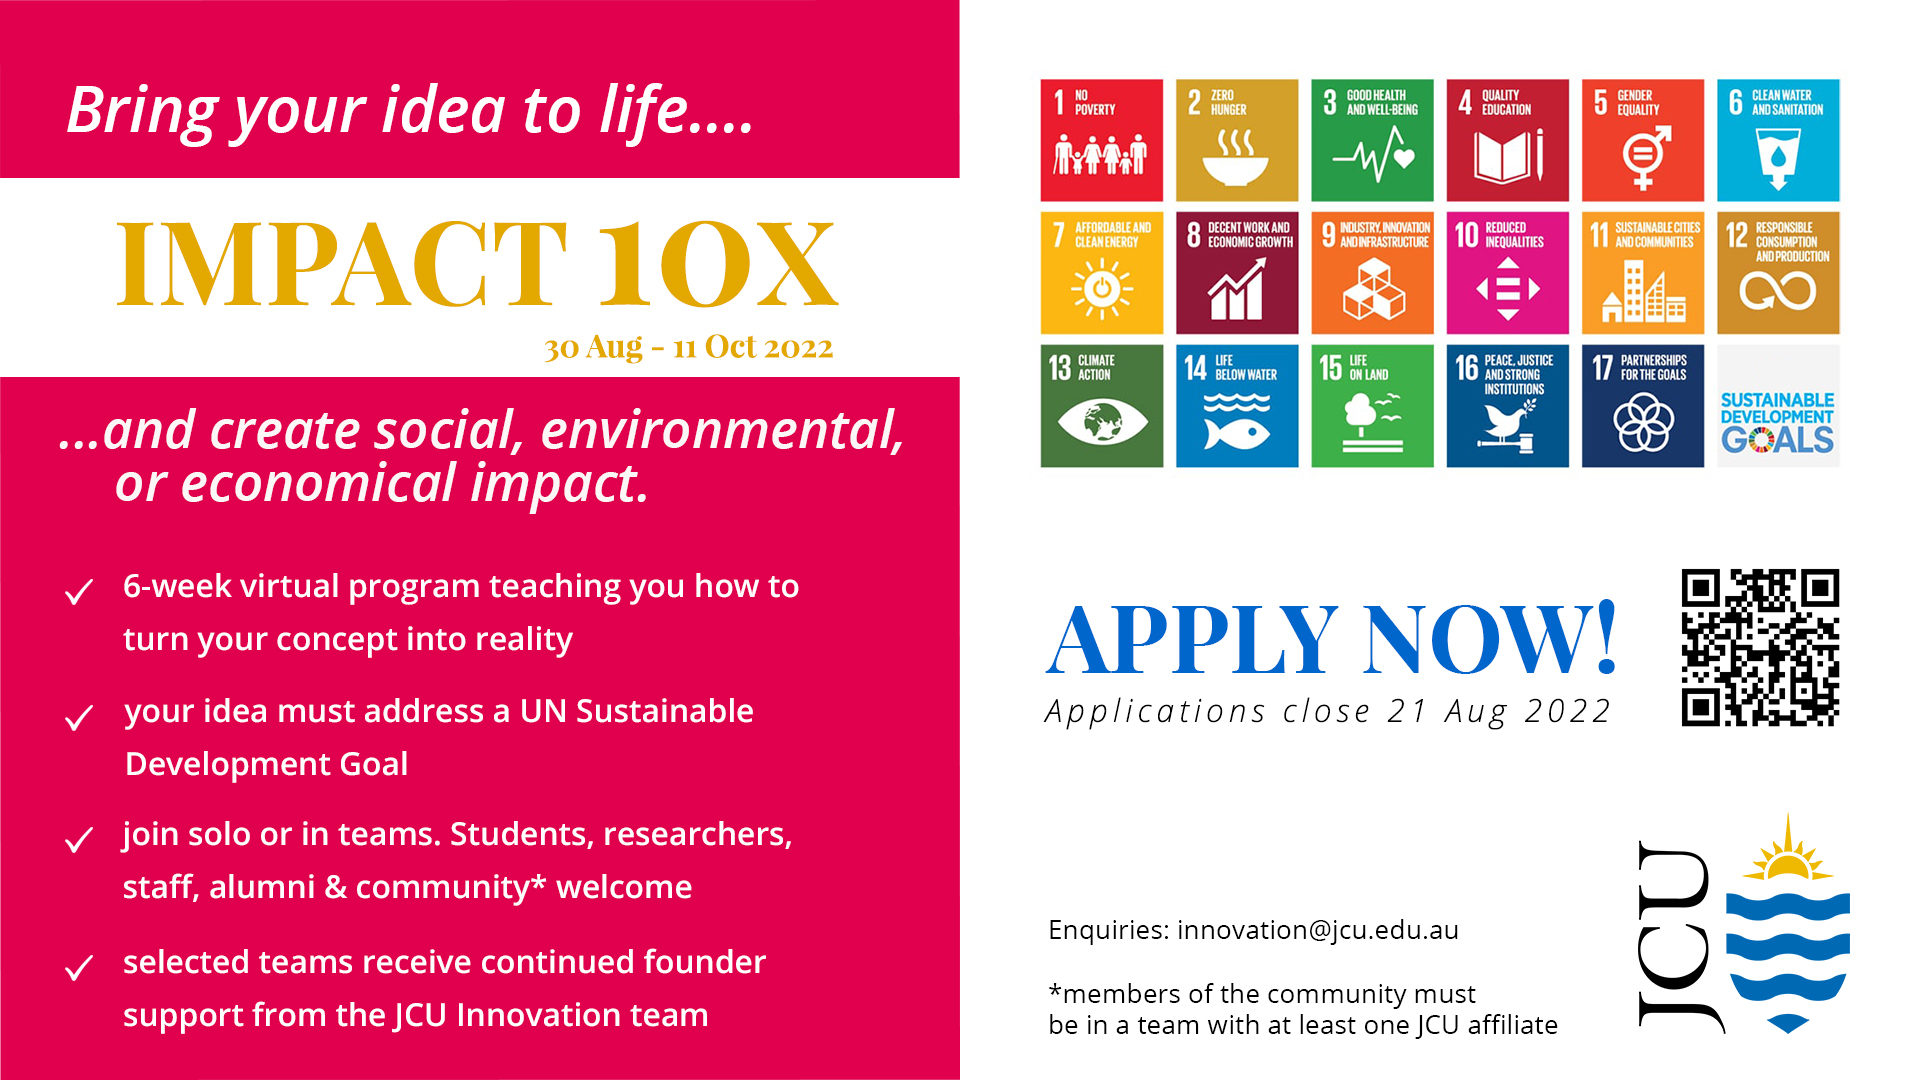 Sustainability Impact 10X